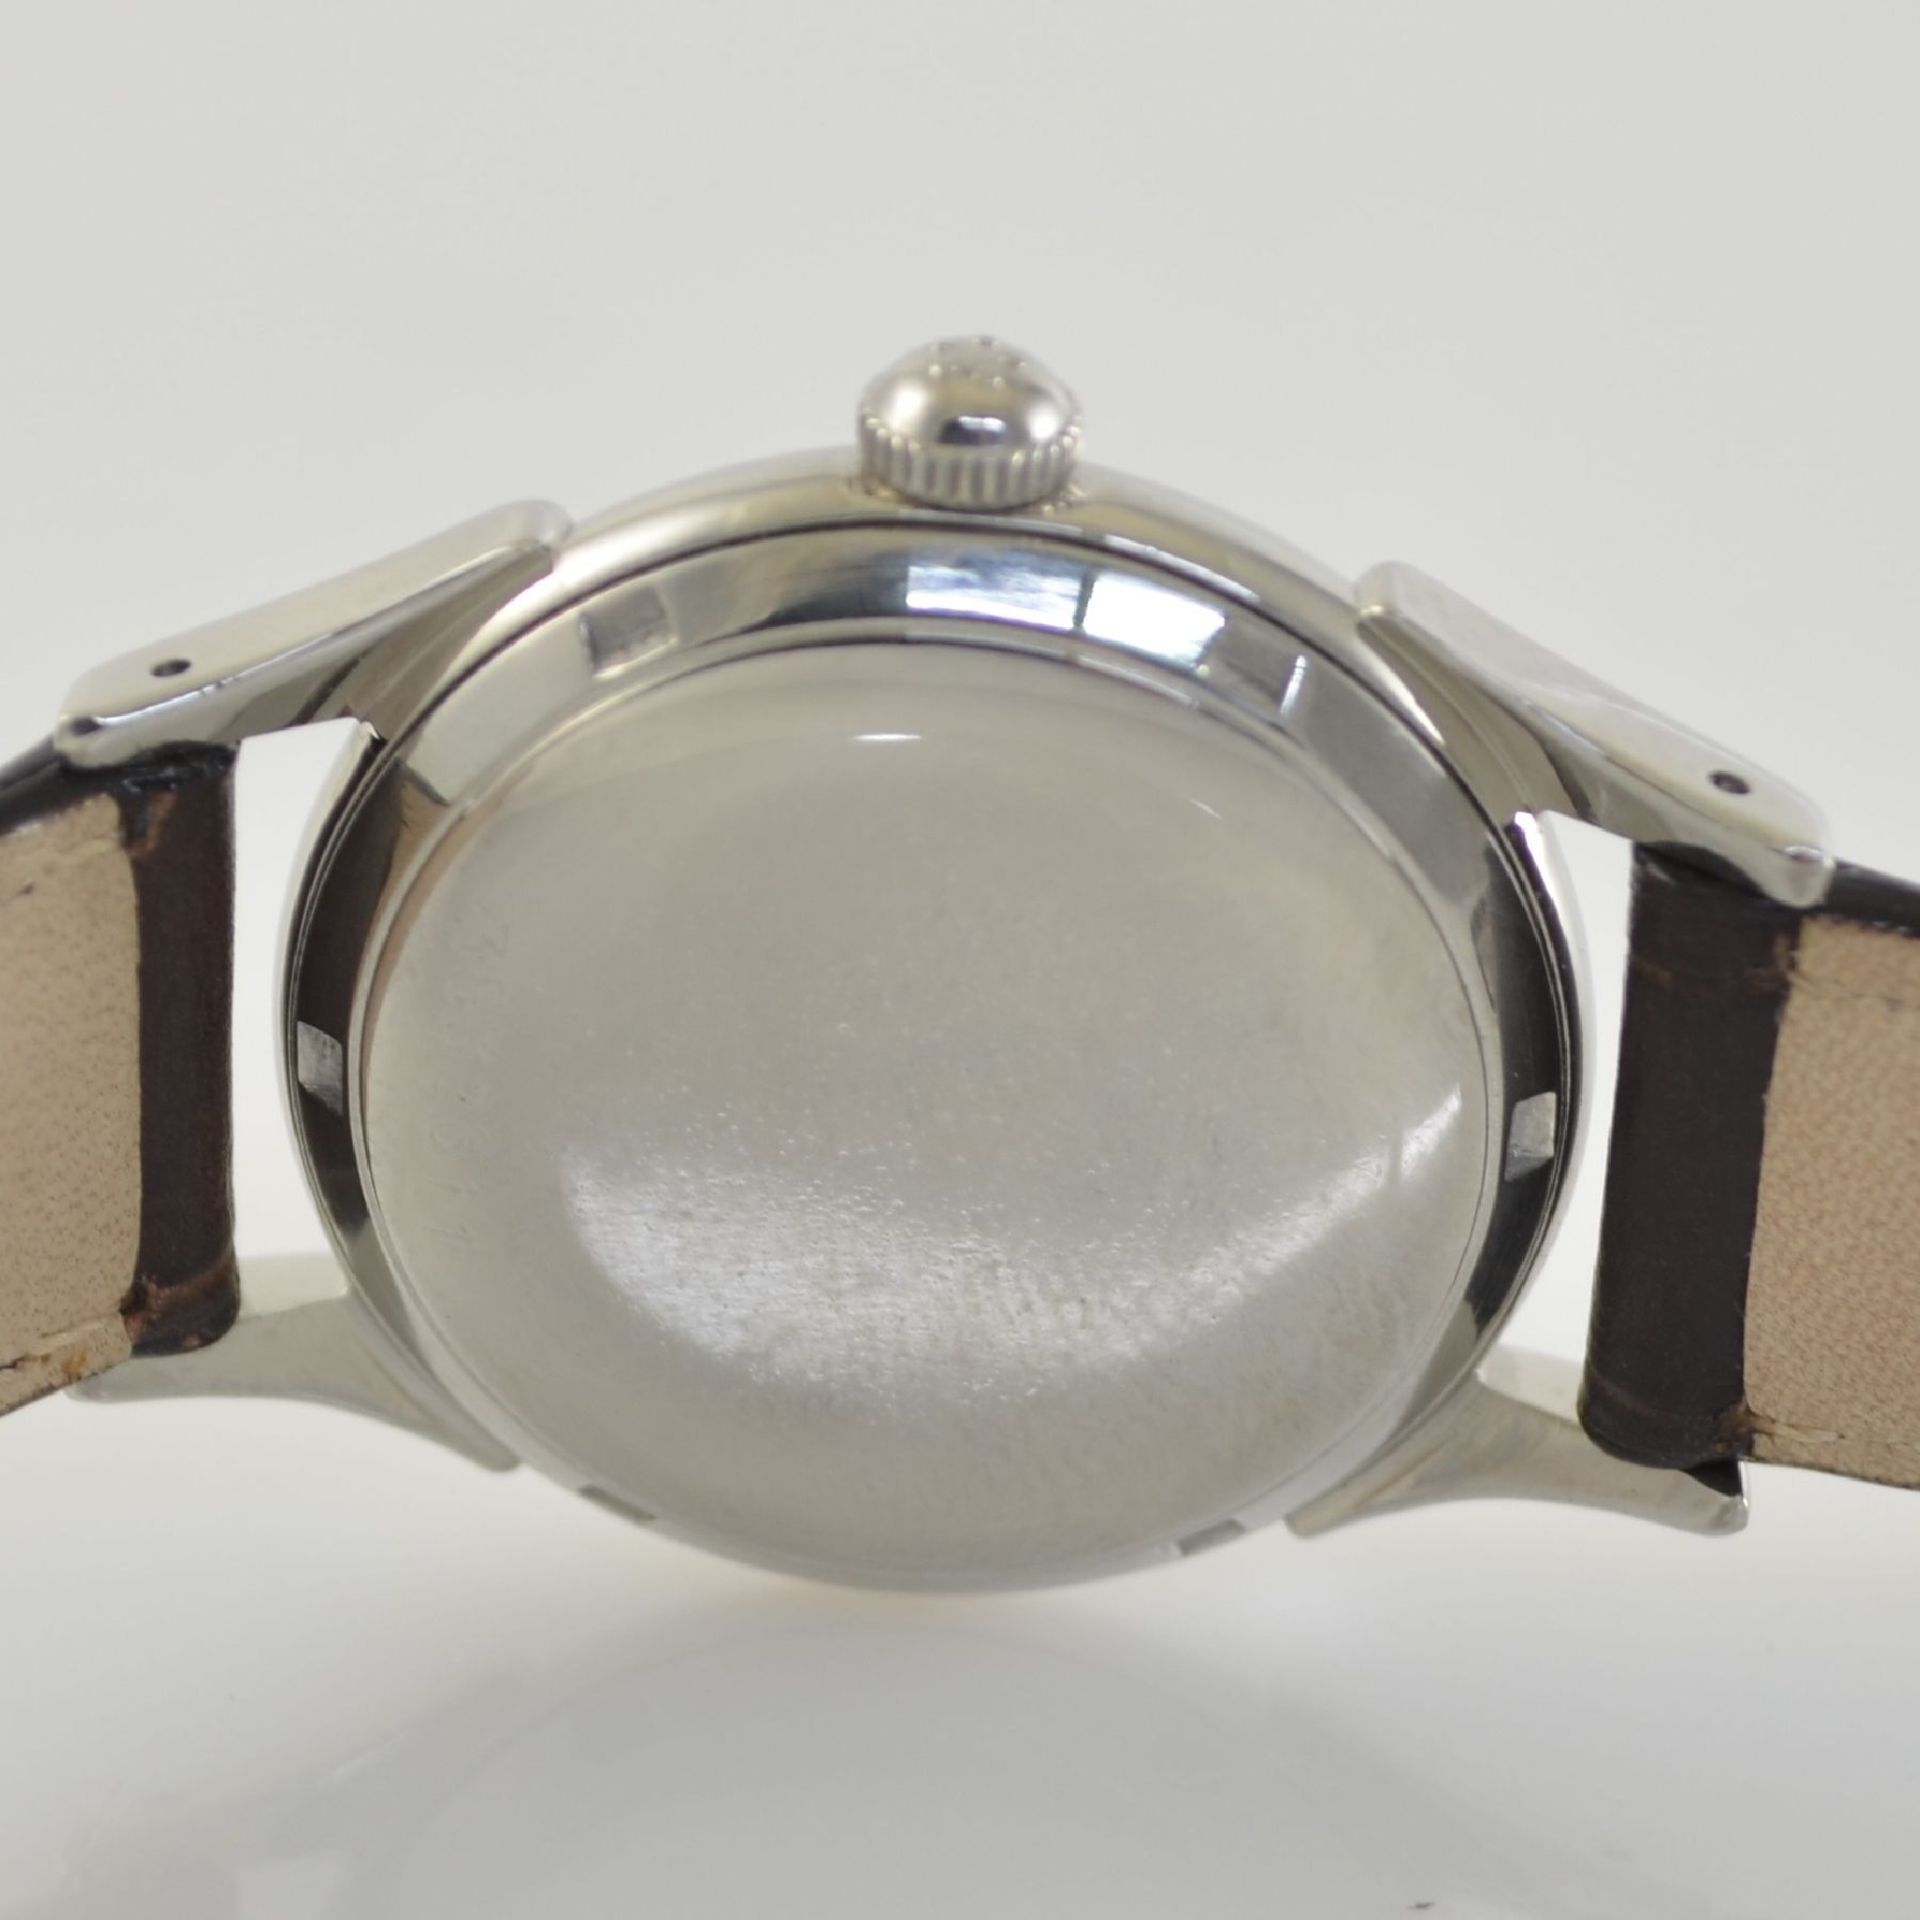 ETERNA-MATIC 2 wristwatches in steel & steel/ gold, Switzerland around 1955, self winding, 1 x - Bild 4 aus 12